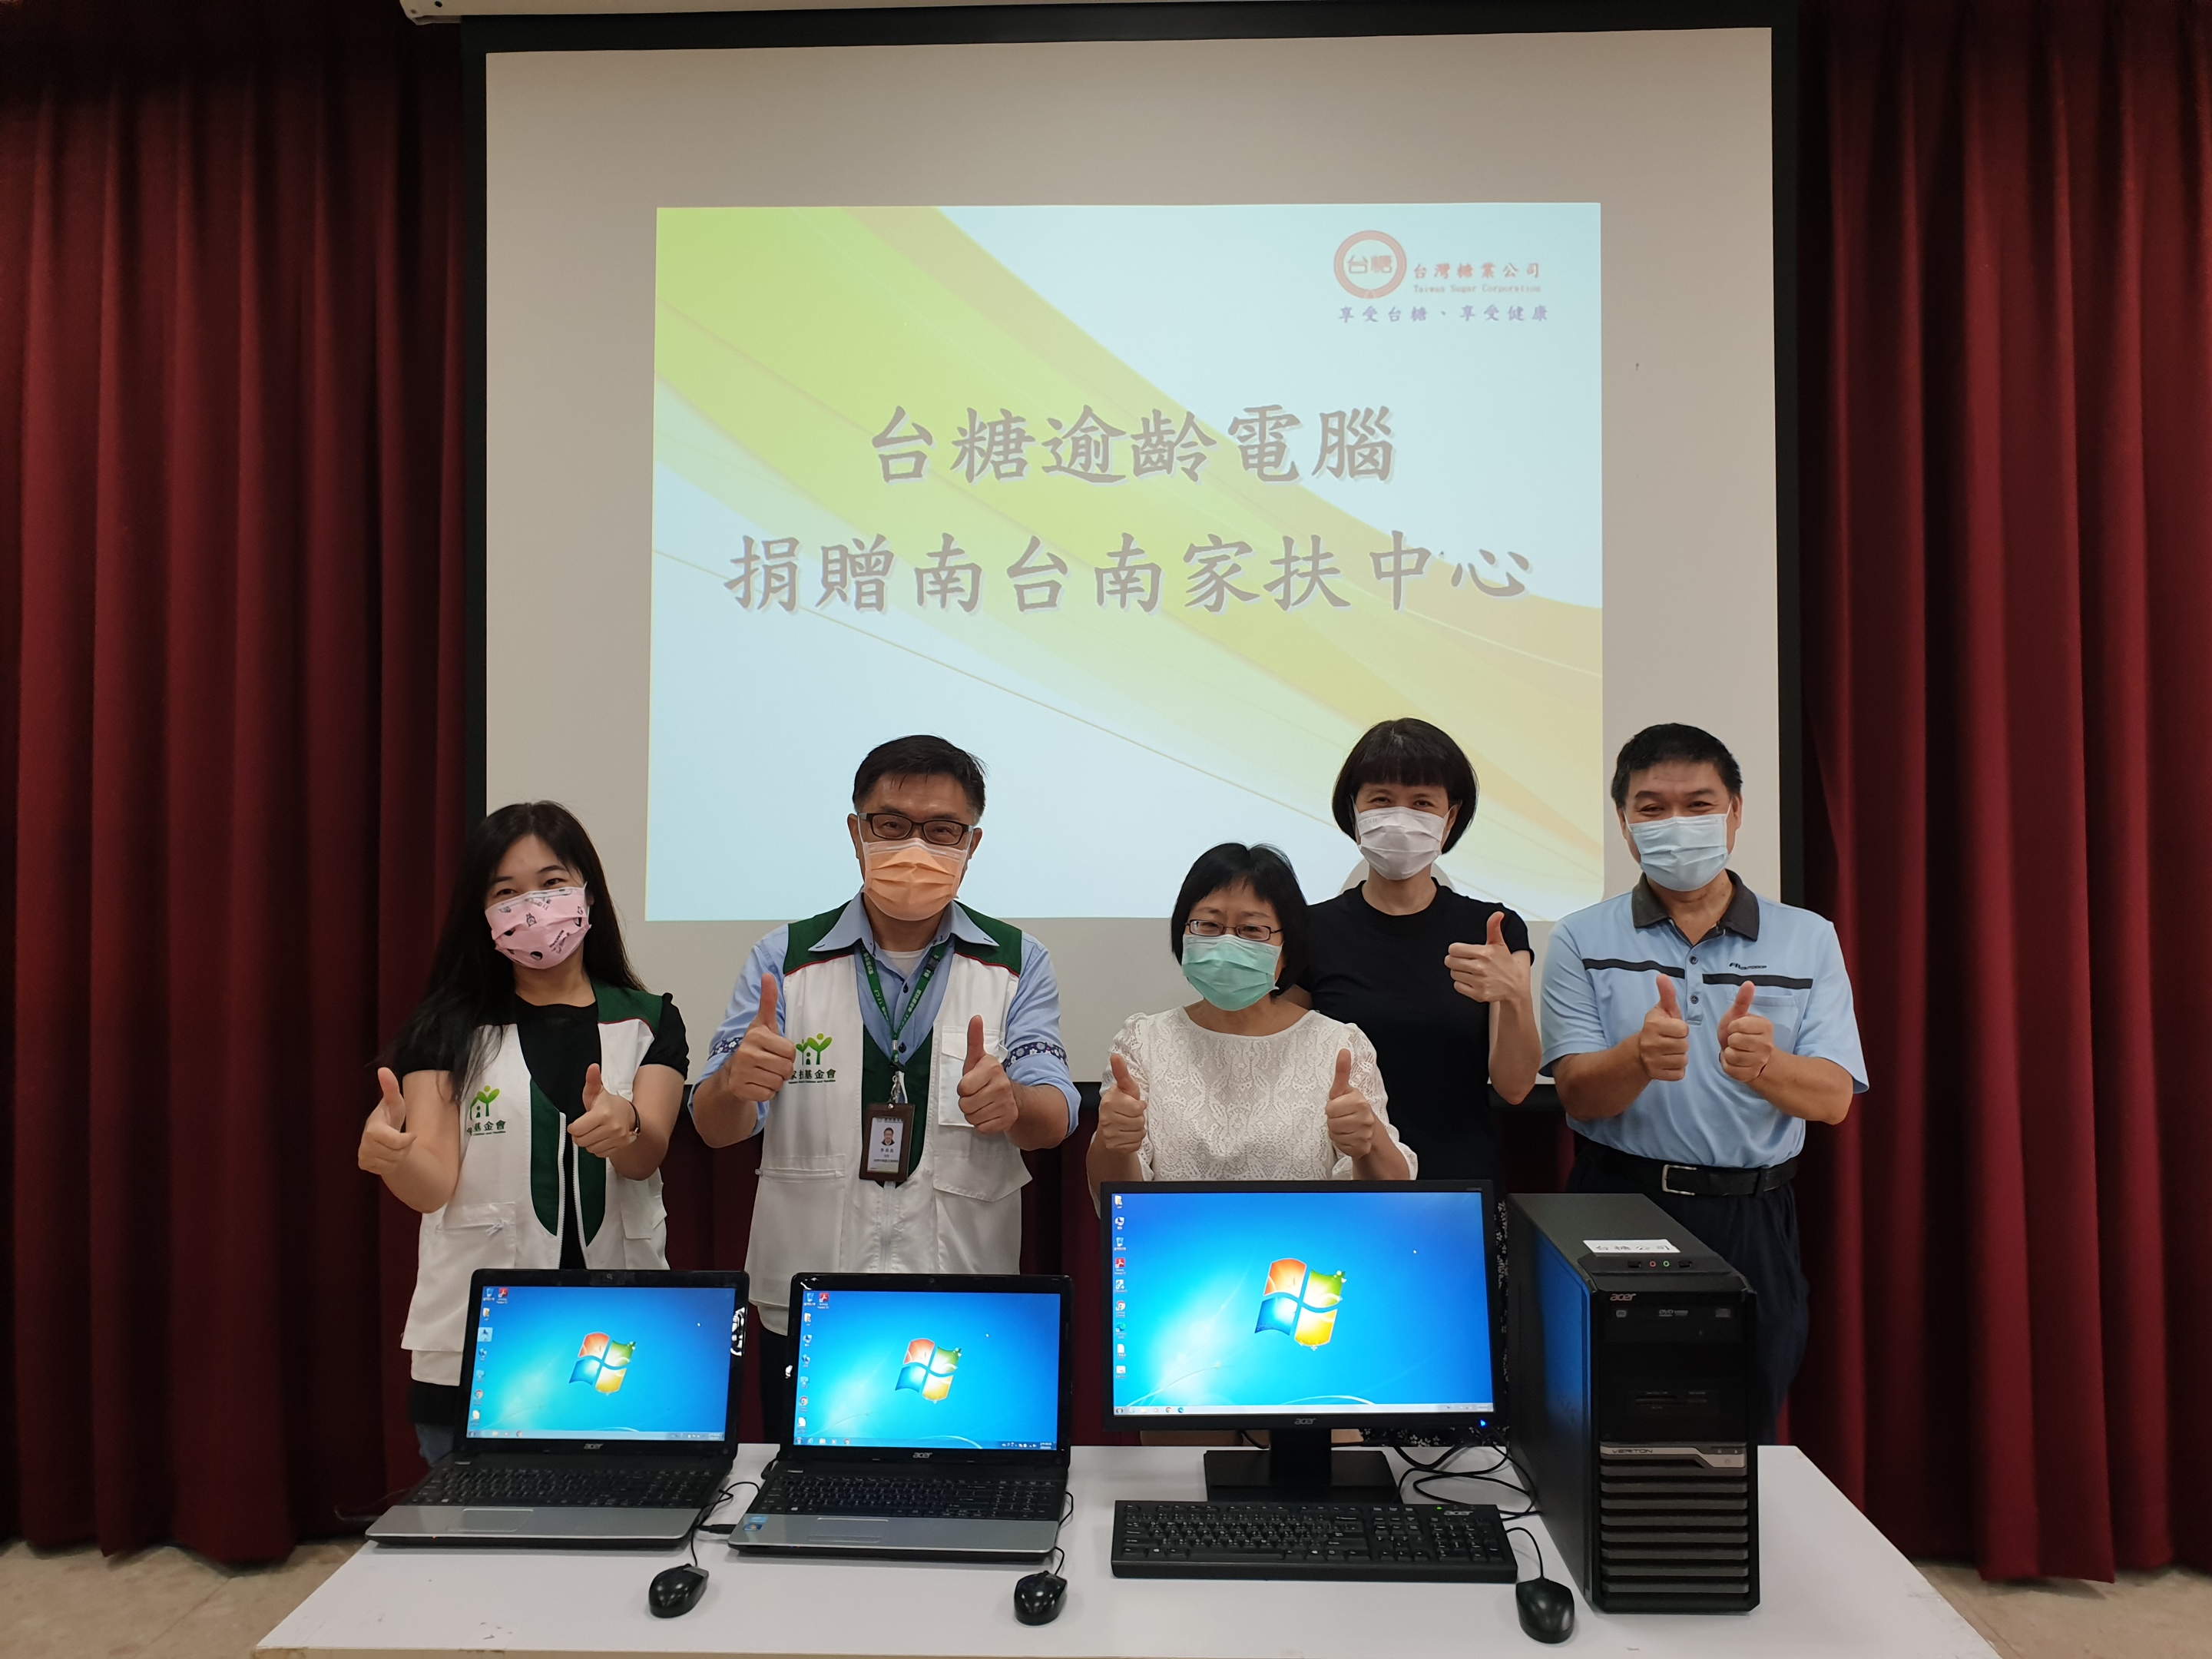 台糖分享再生電腦資源給南台南家扶中心，提升弱勢兒少數位素養，有機會透過電腦多元學習與探索，翻轉未來。